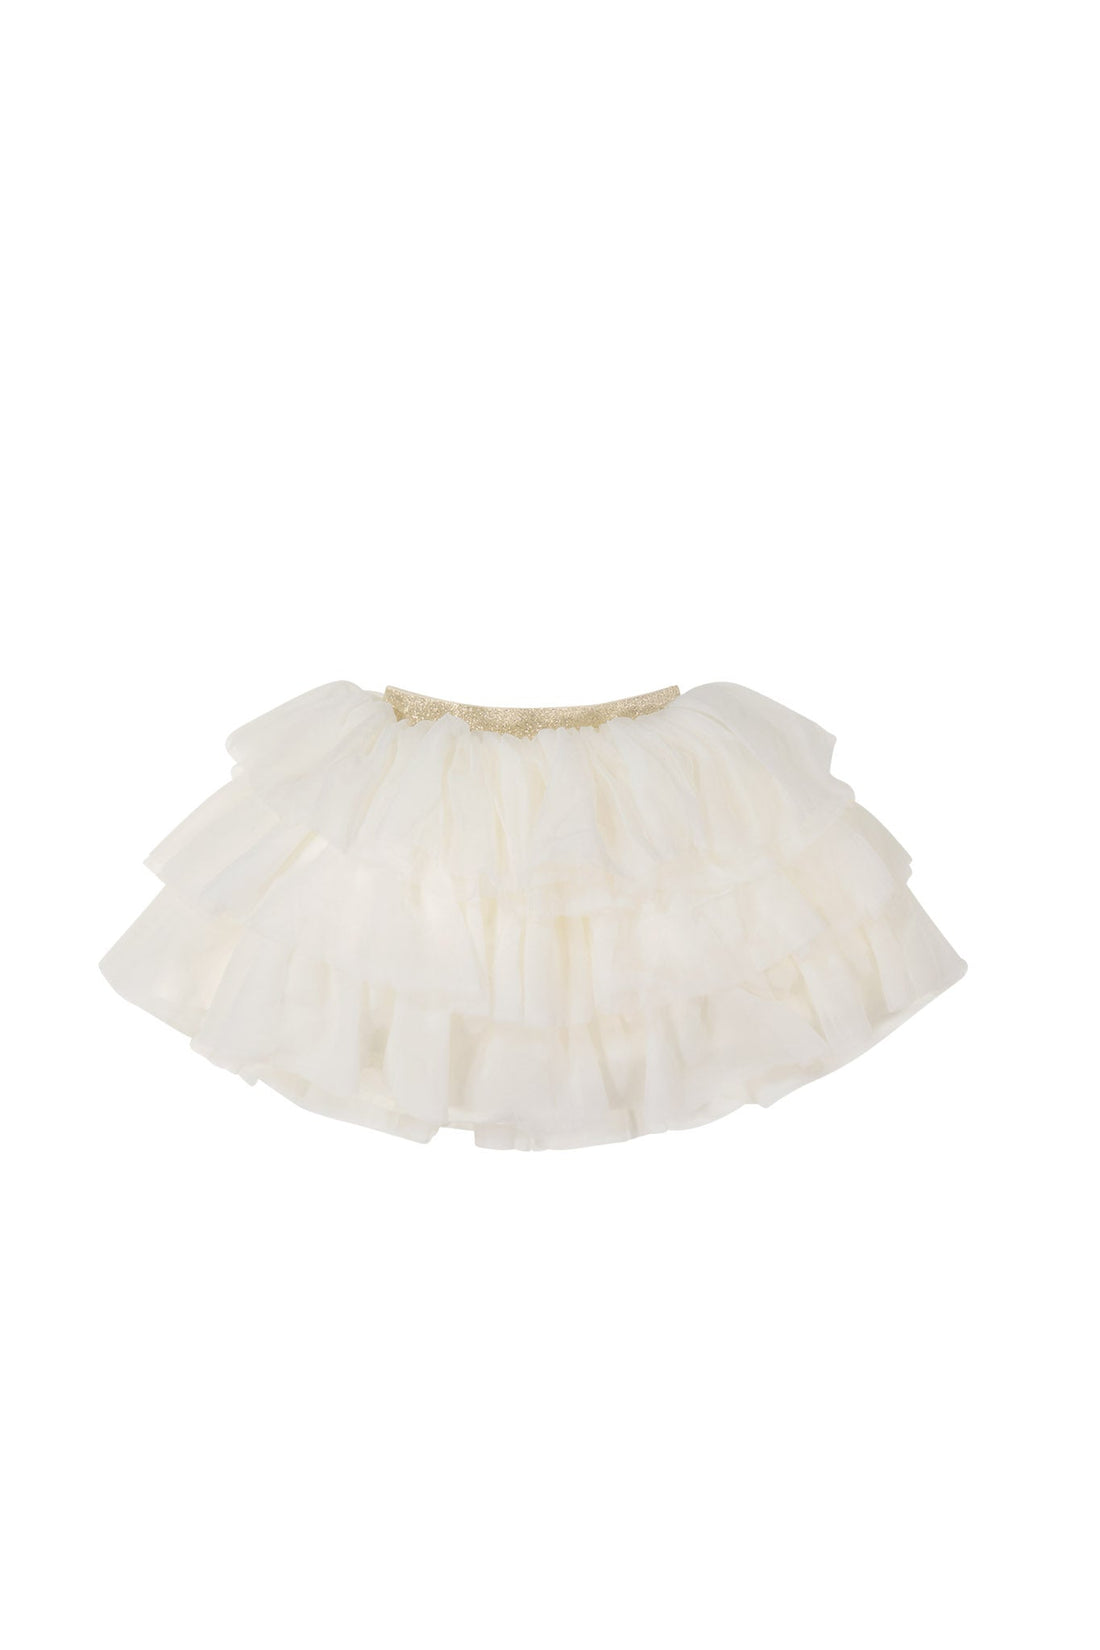 Valentina Tulle Skirt - Plaster